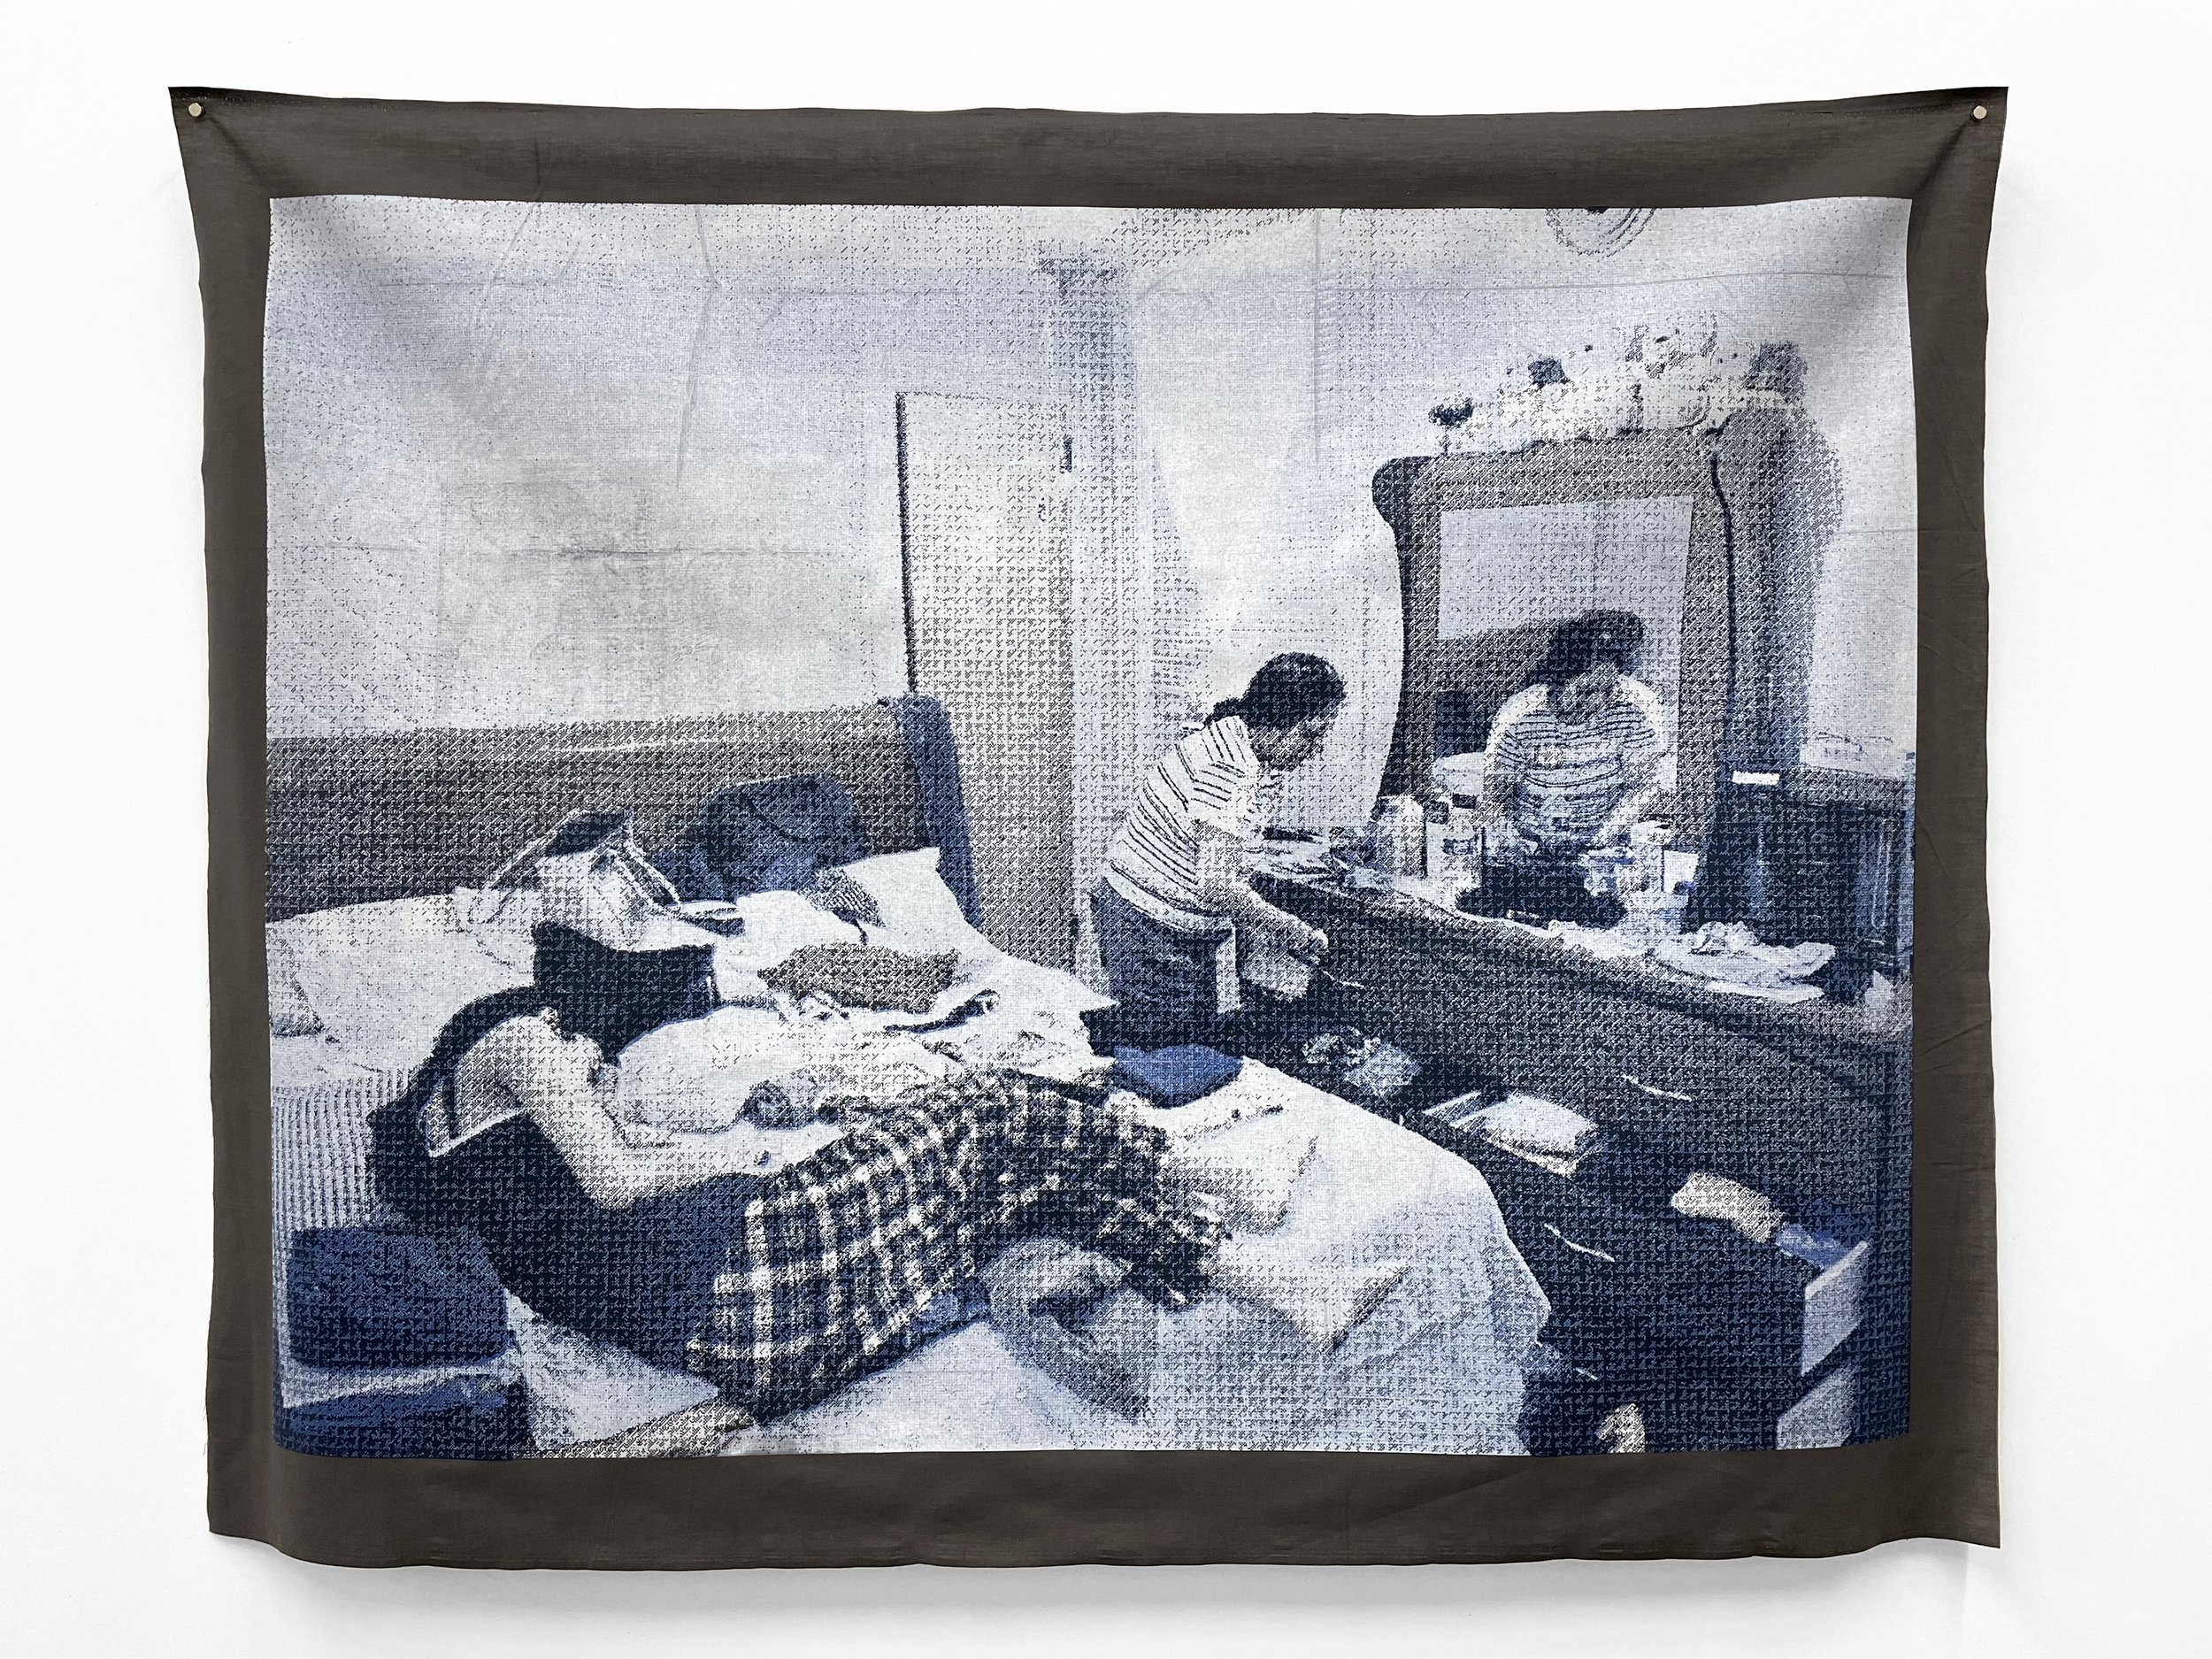    In Grandma’s room  , 2021, Duo-tone silkscreen on poly-cotton fabric, 44” x 55.5” 